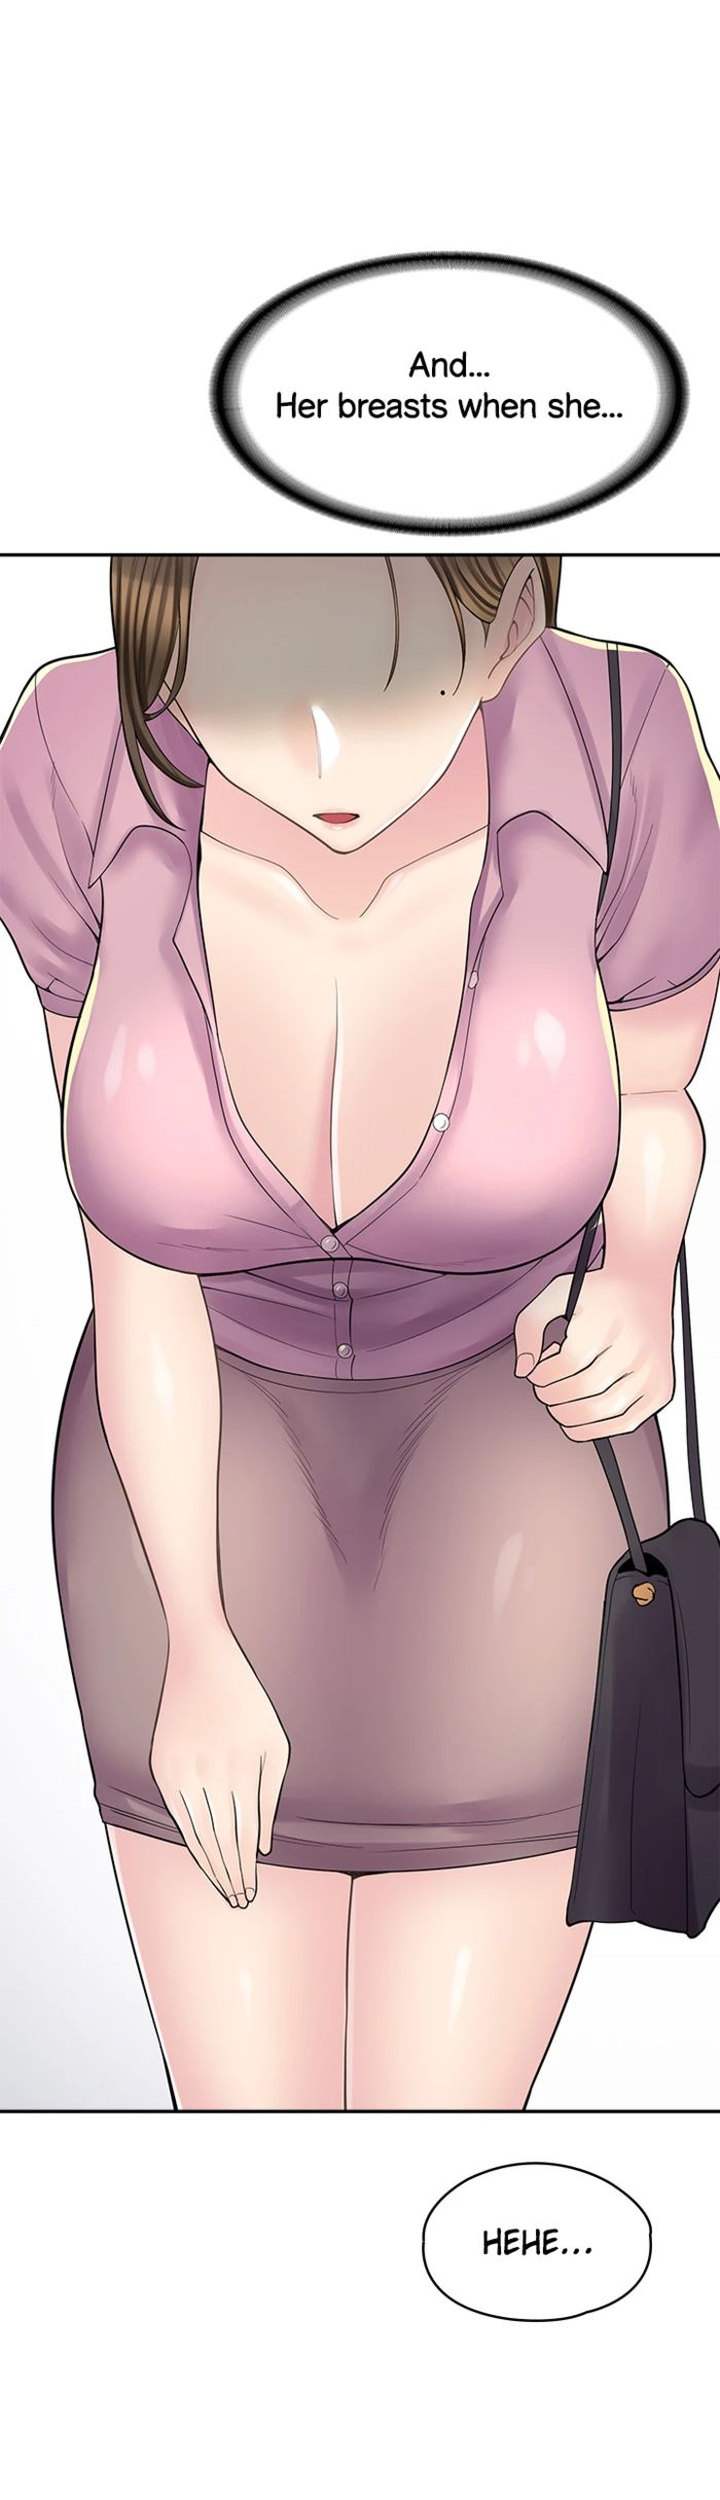 The image Erotic Manga Café Girls - Chapter 13 - 08adeb6657ce1f7297 - ManhwaManga.io